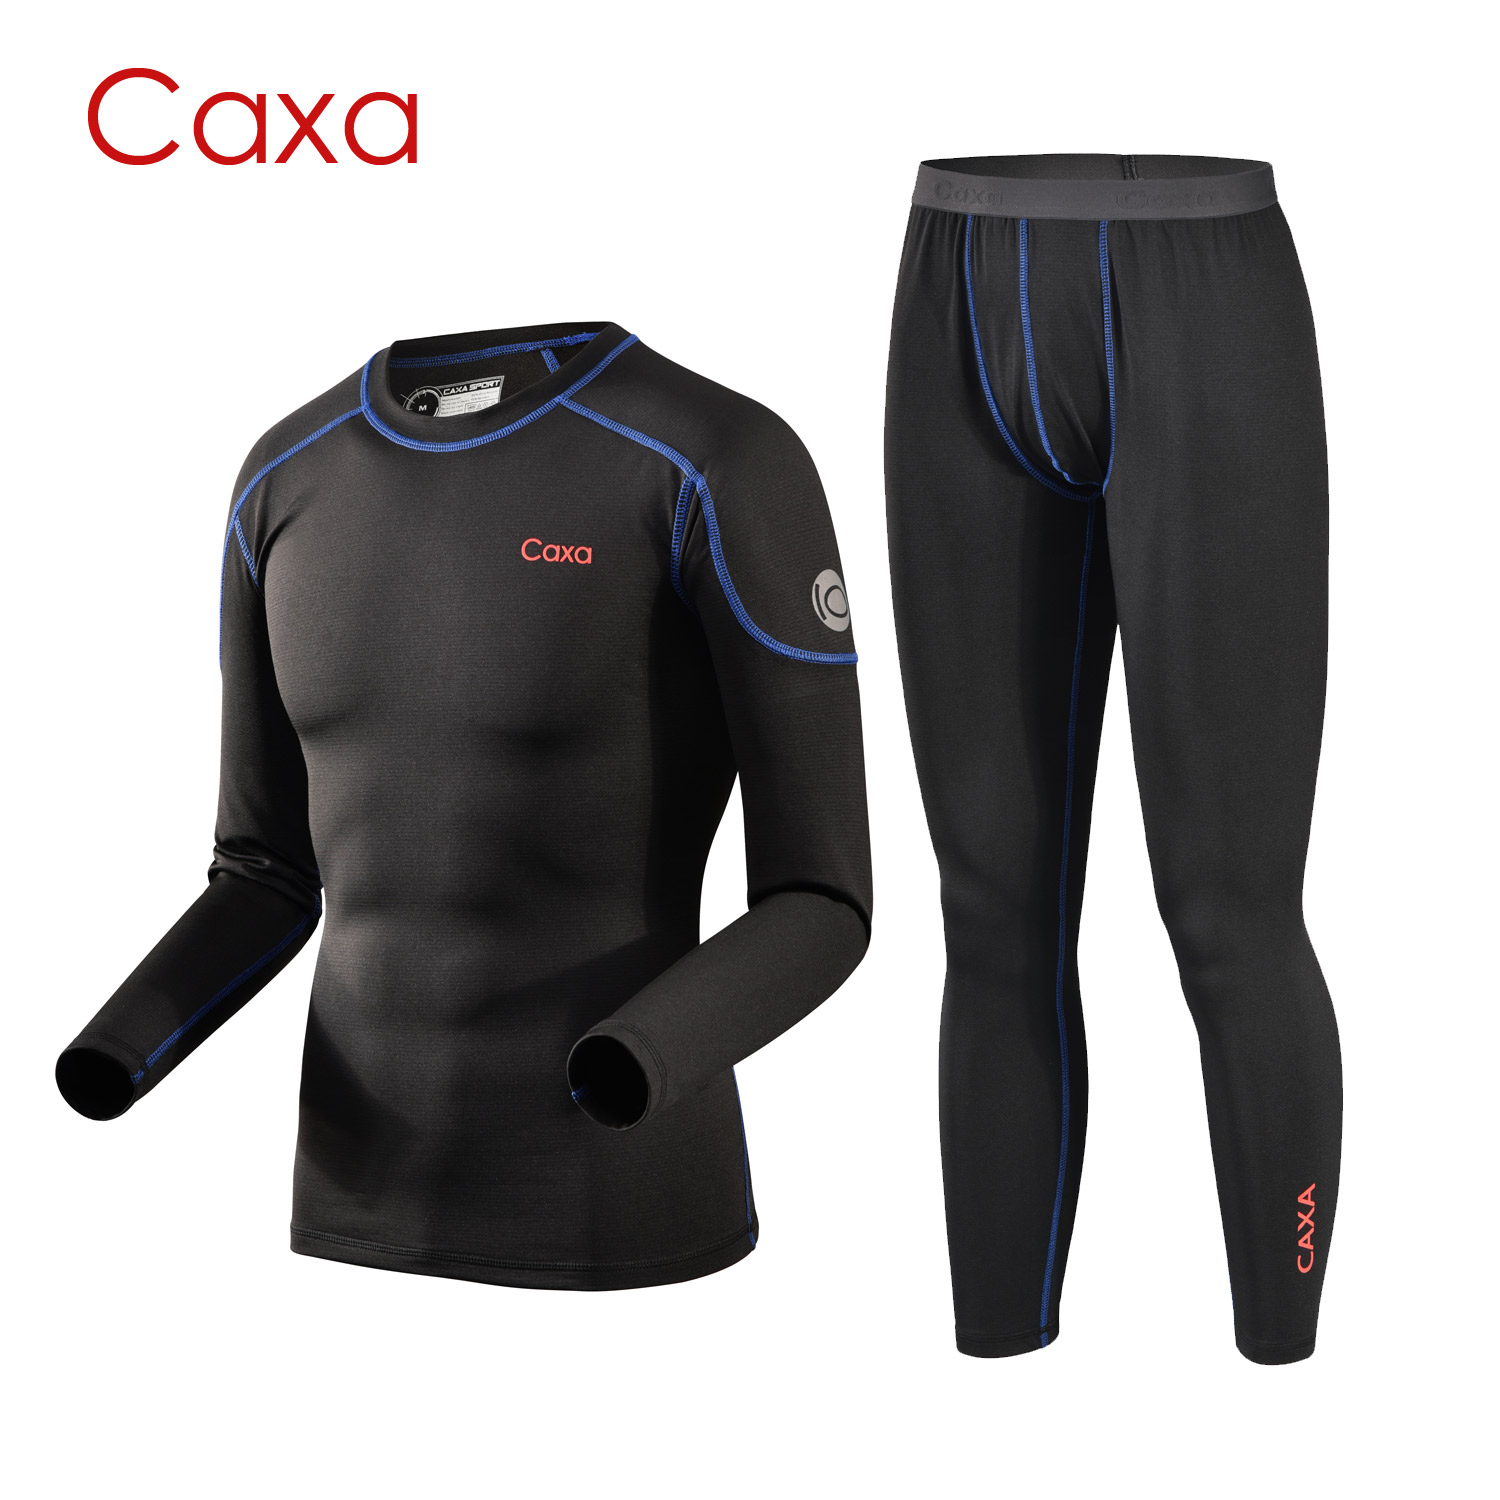 caxa户外速干保暖内衣套装 弹性好  修身吸汗快干 色牢耐穿 男款